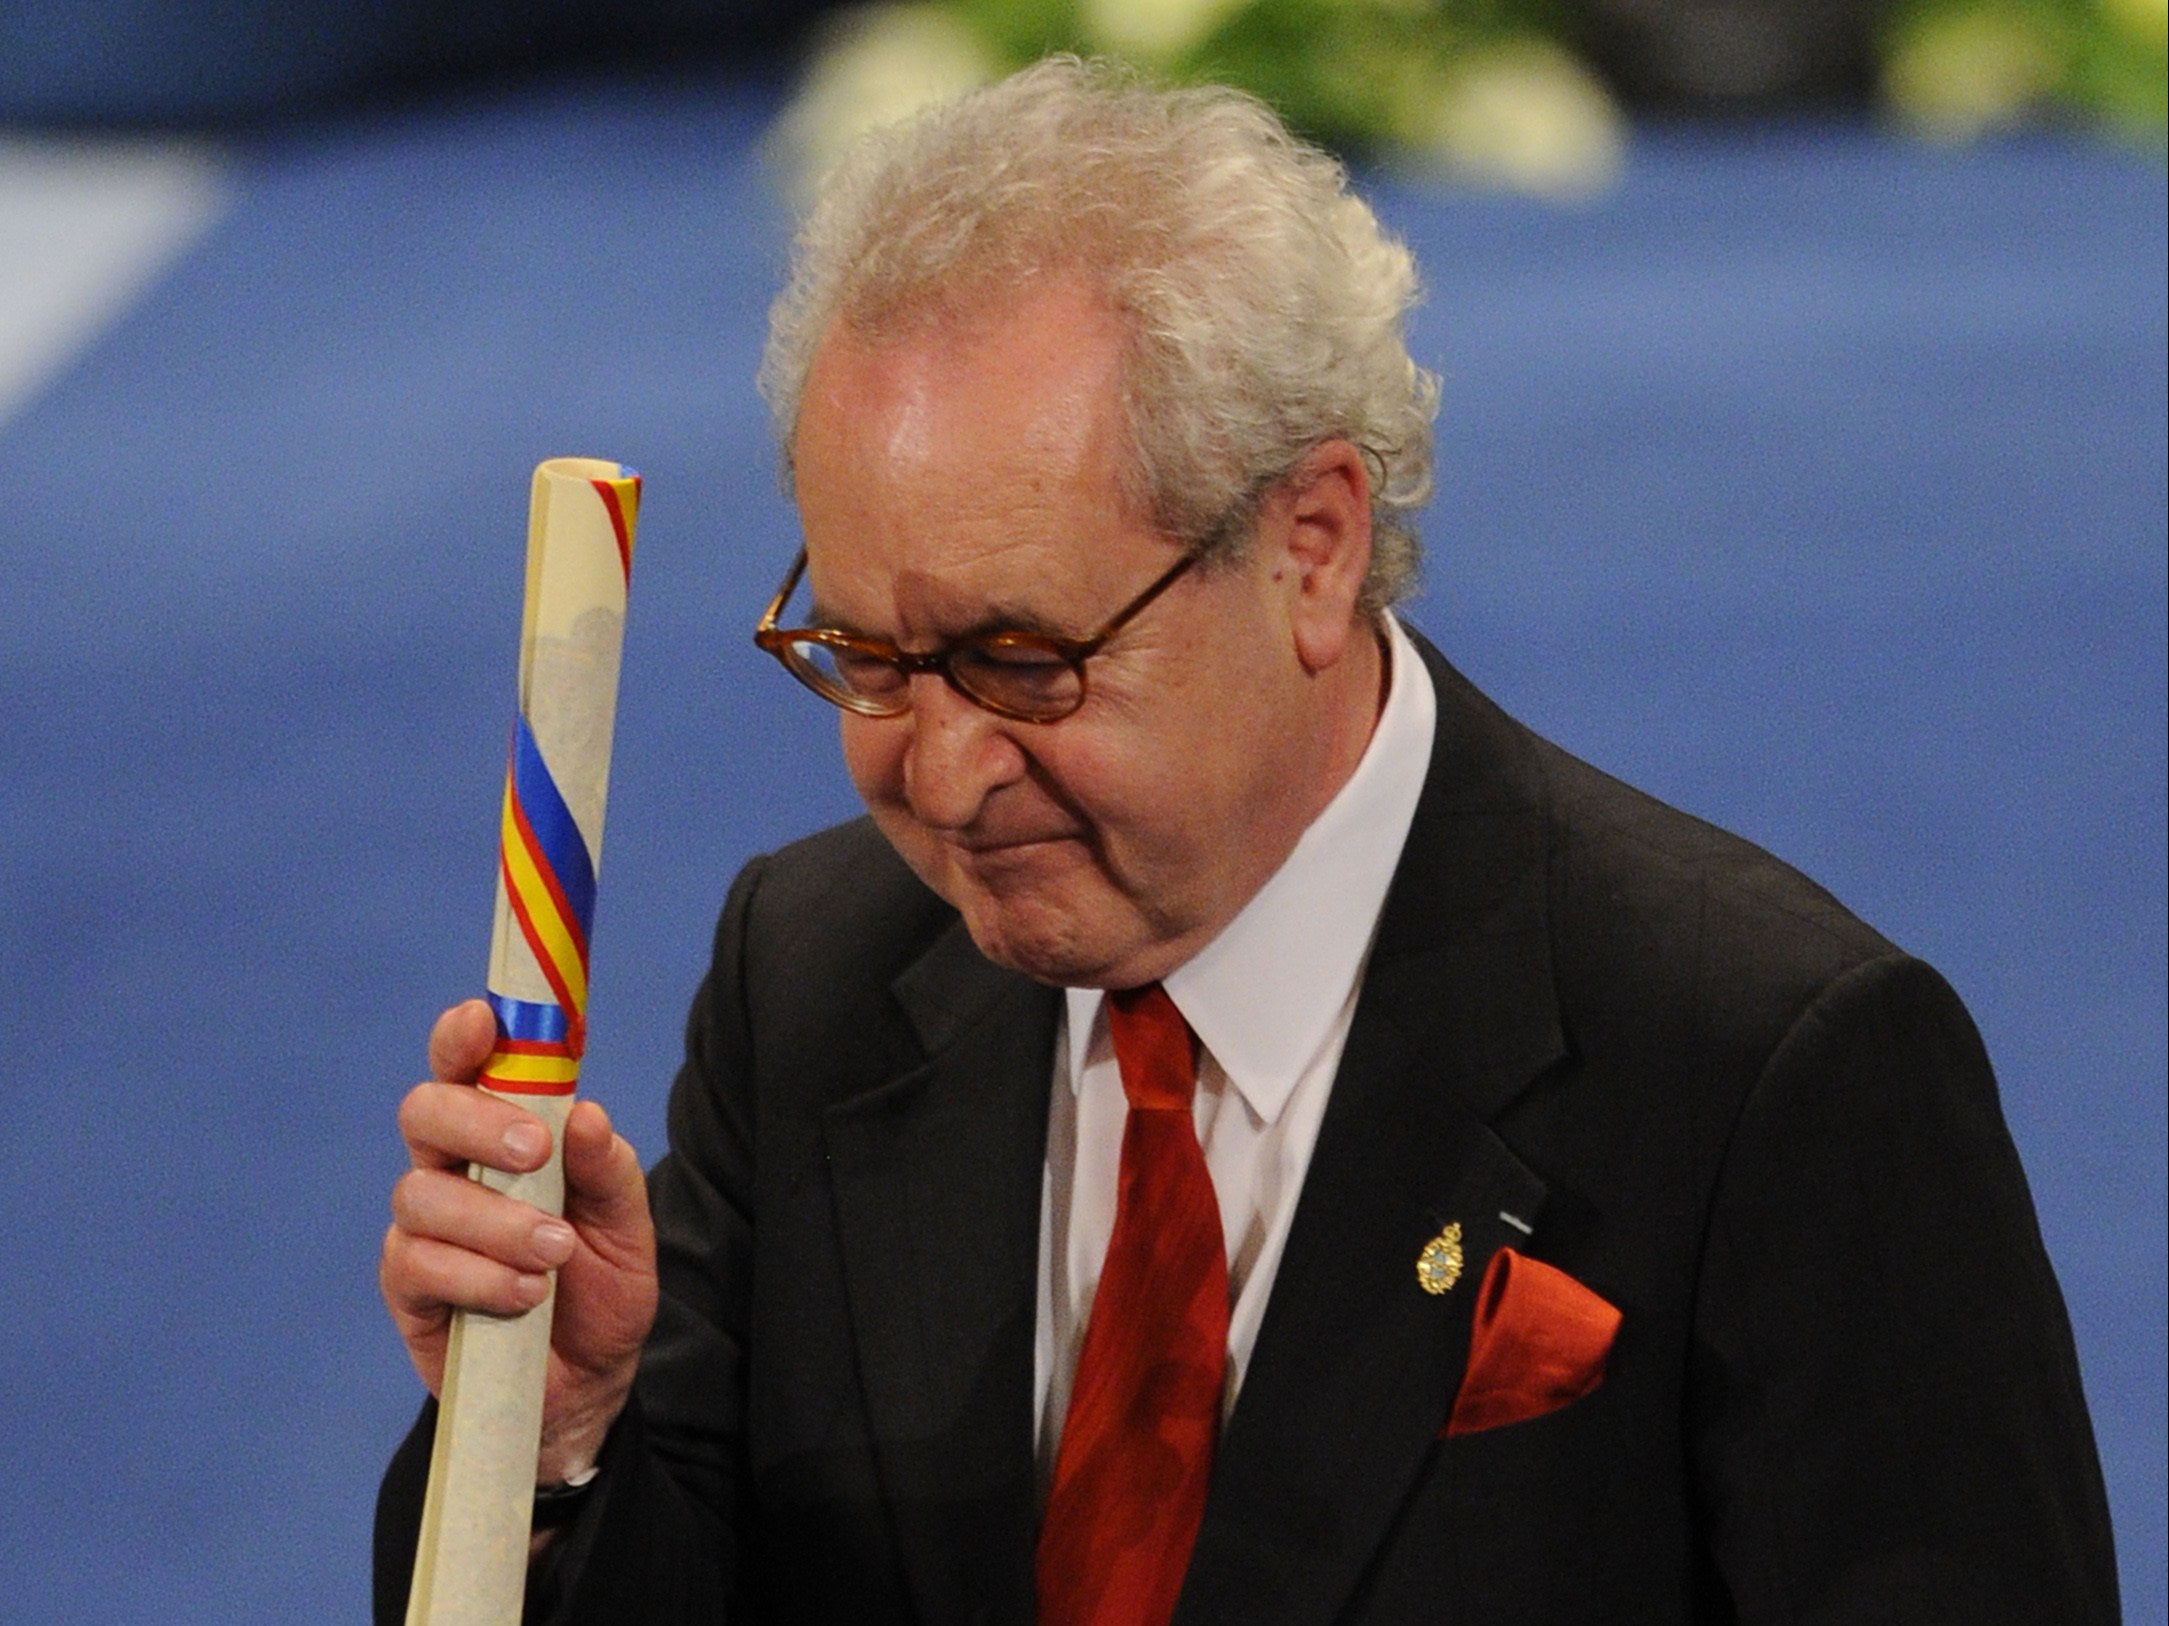 Banville recibió el premio Príncipe de Asturias en 2014